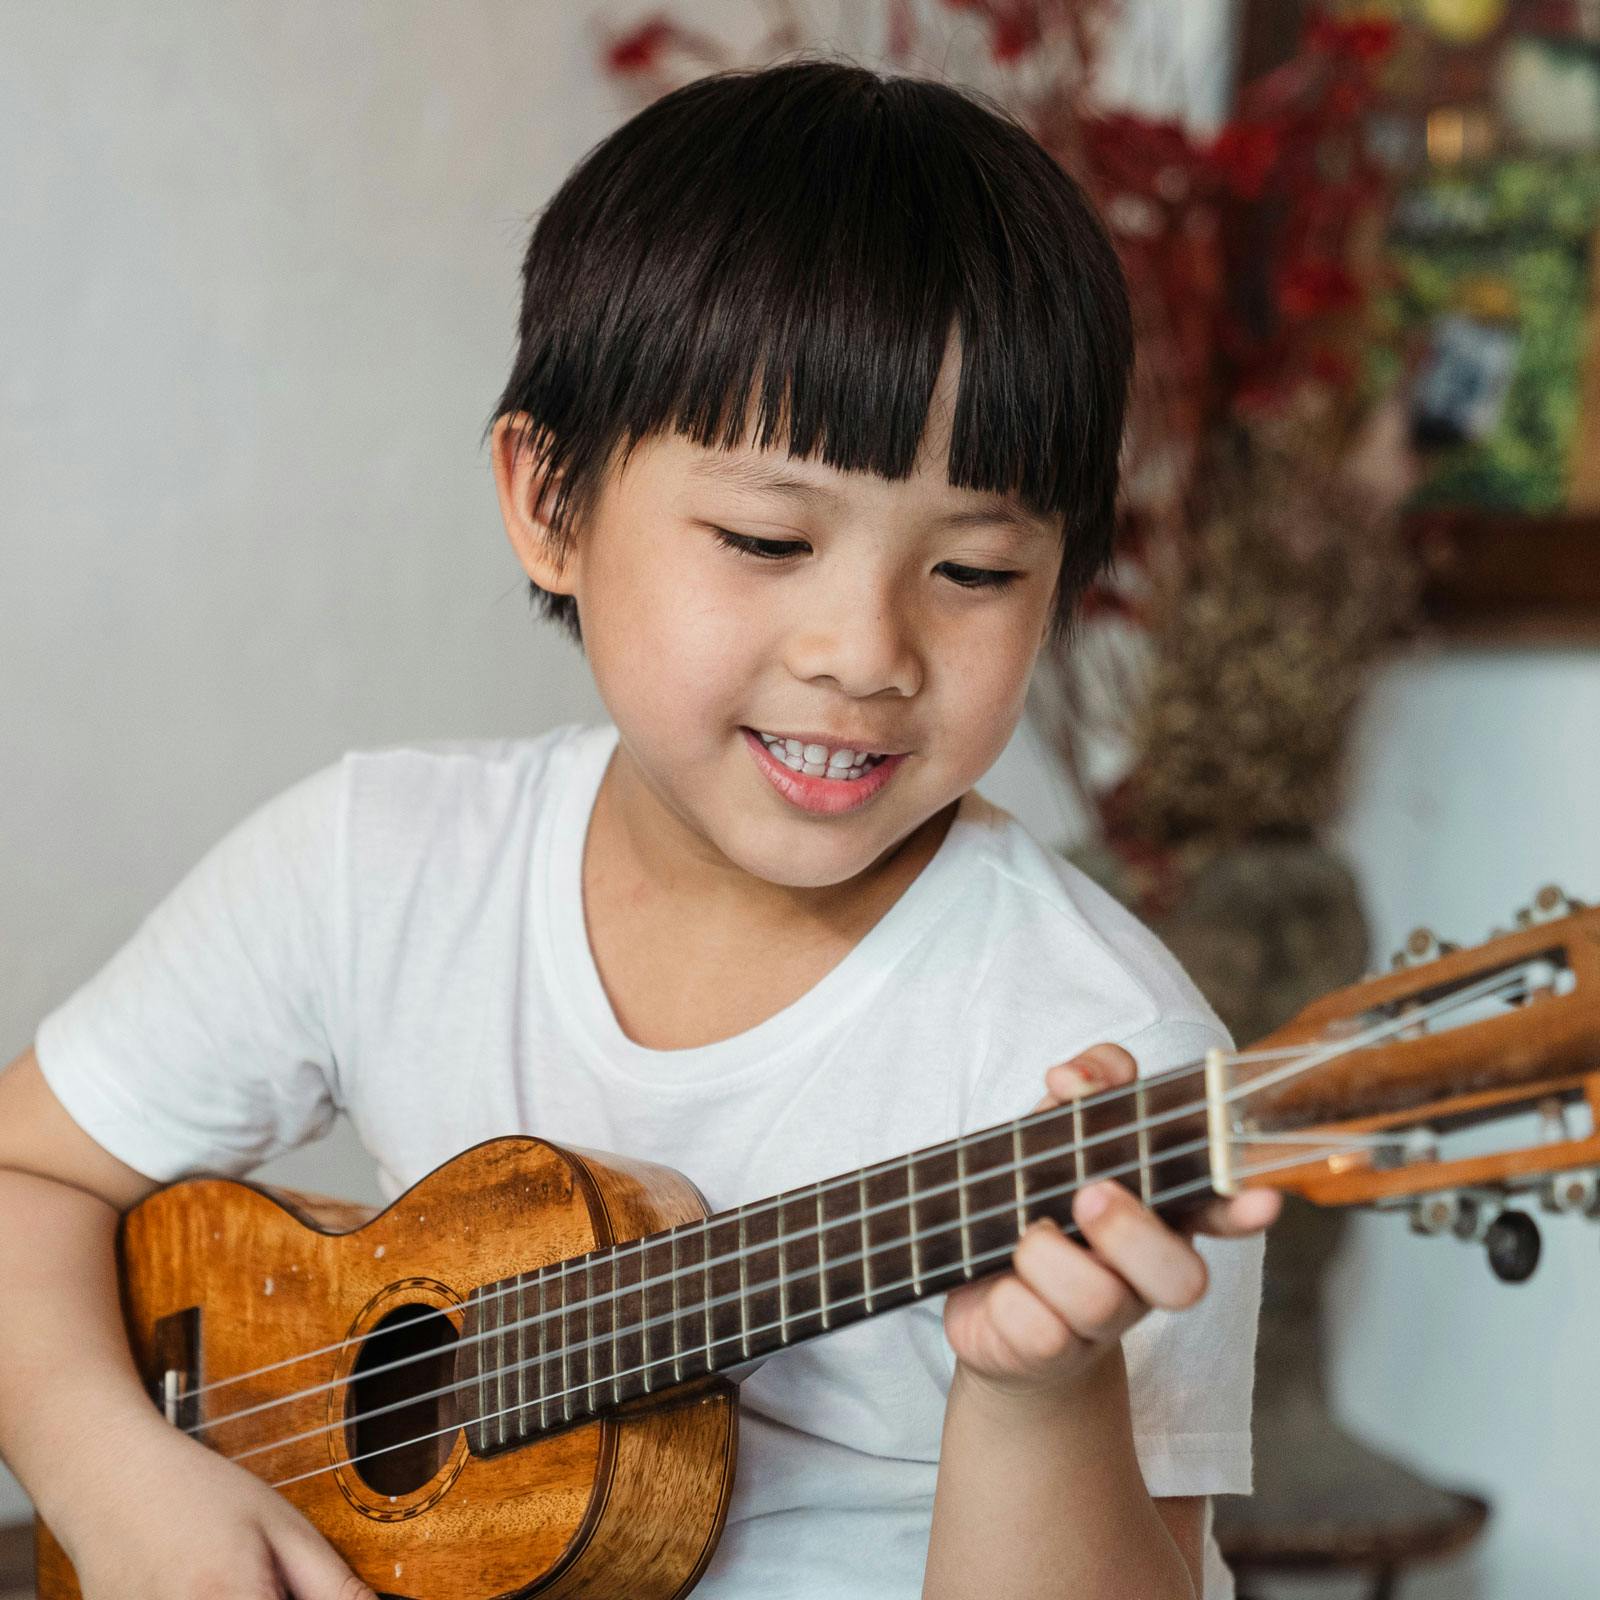 Child playing ukulele